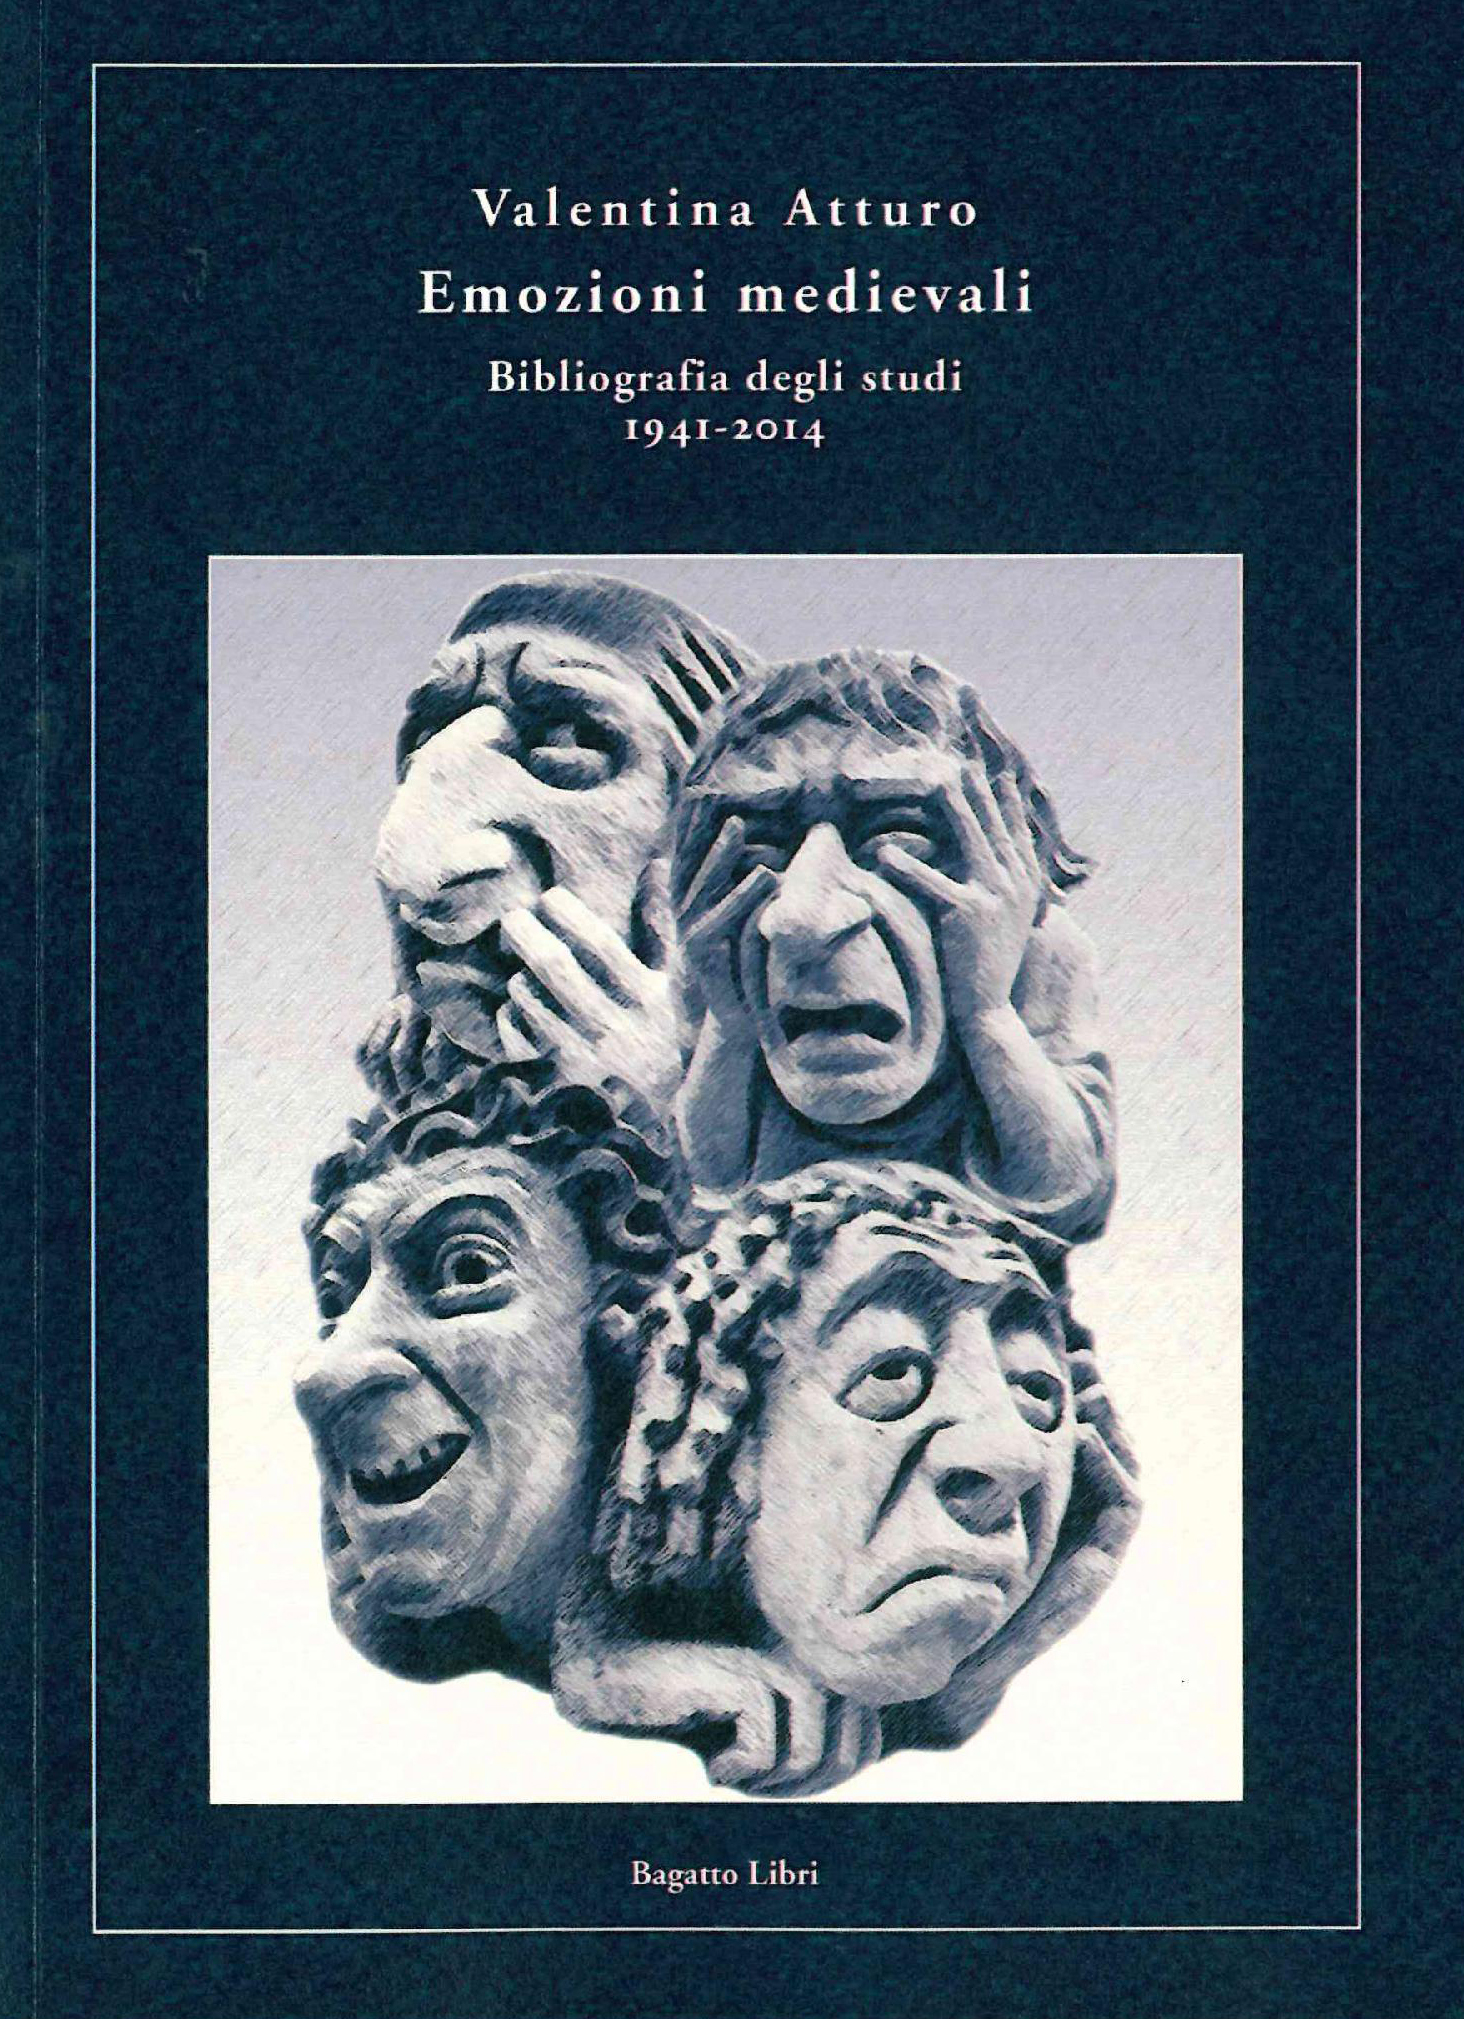 V. Atturo, Emozioni medievali. Bibliografia degli studi 1941-2014